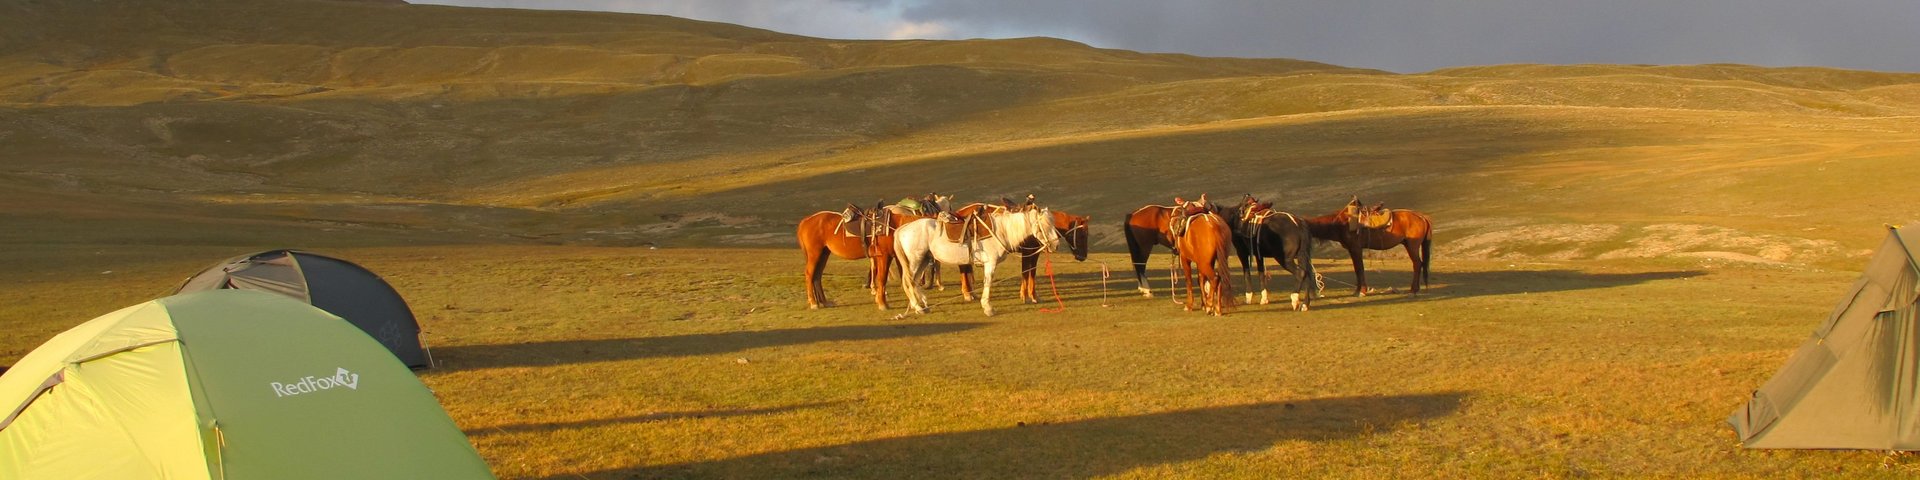 Zeltcamp in Kirgistan bei Abendlicht